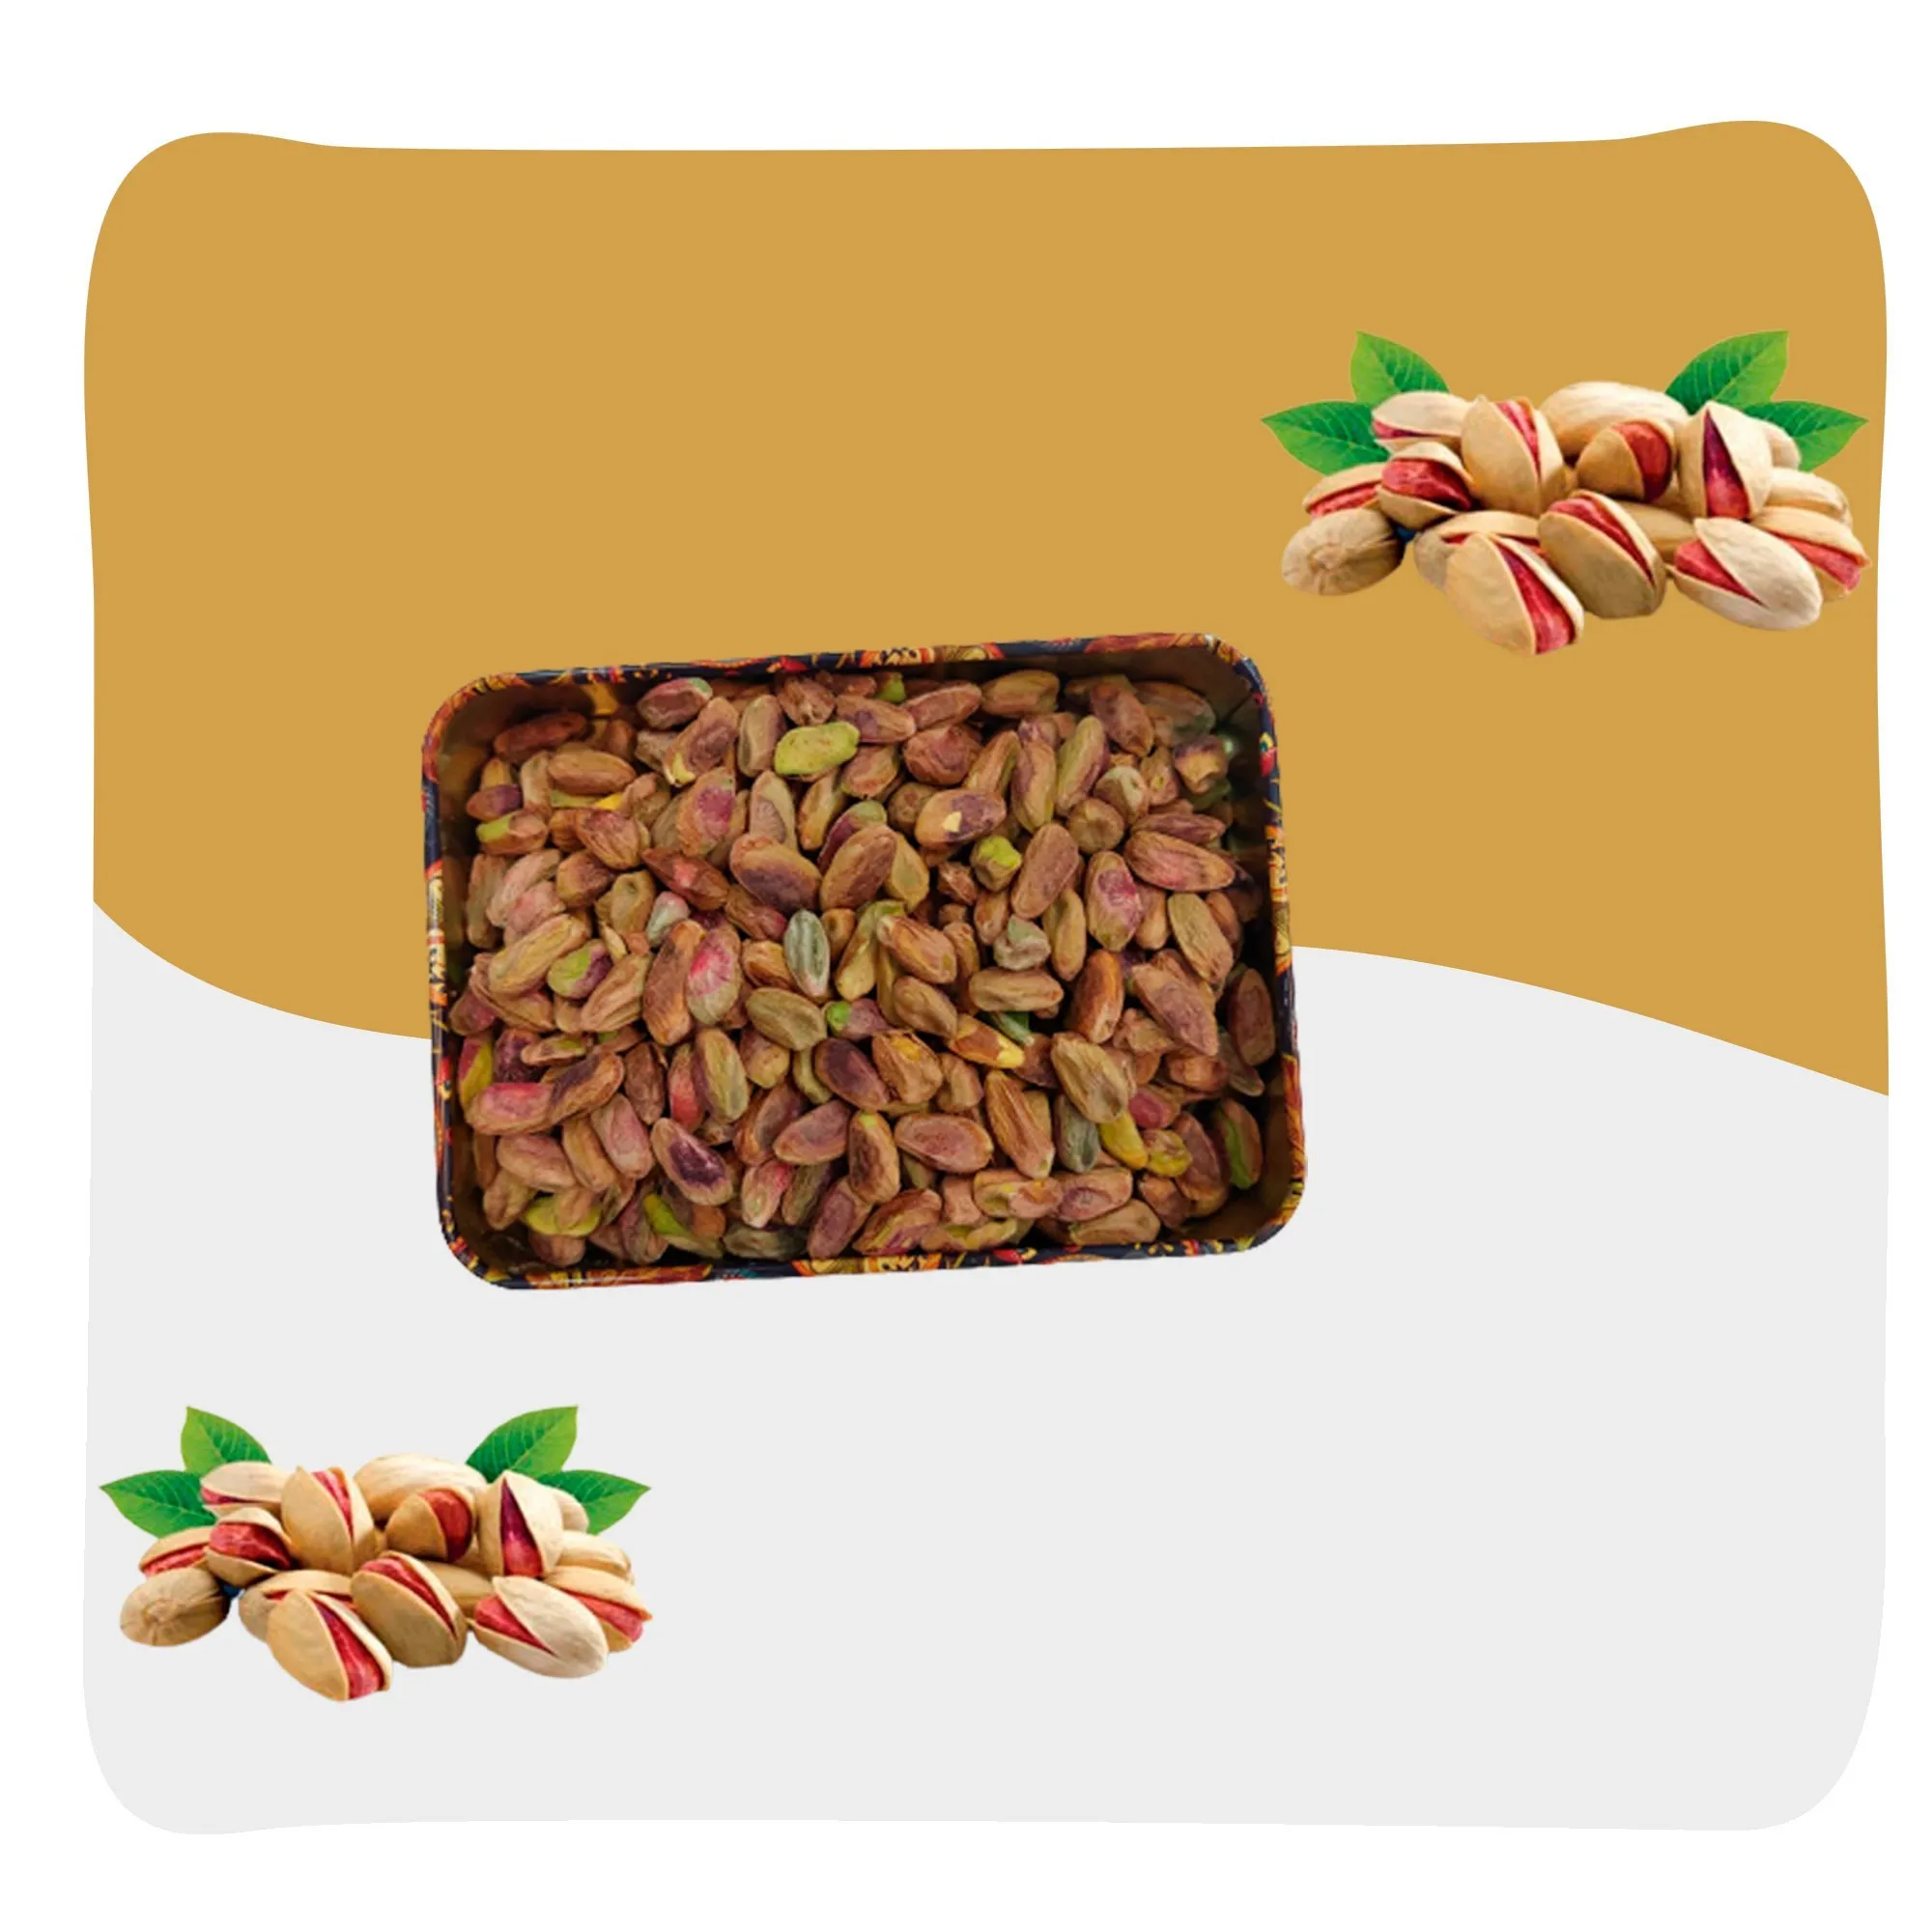 shelled pistachios vs unshelled